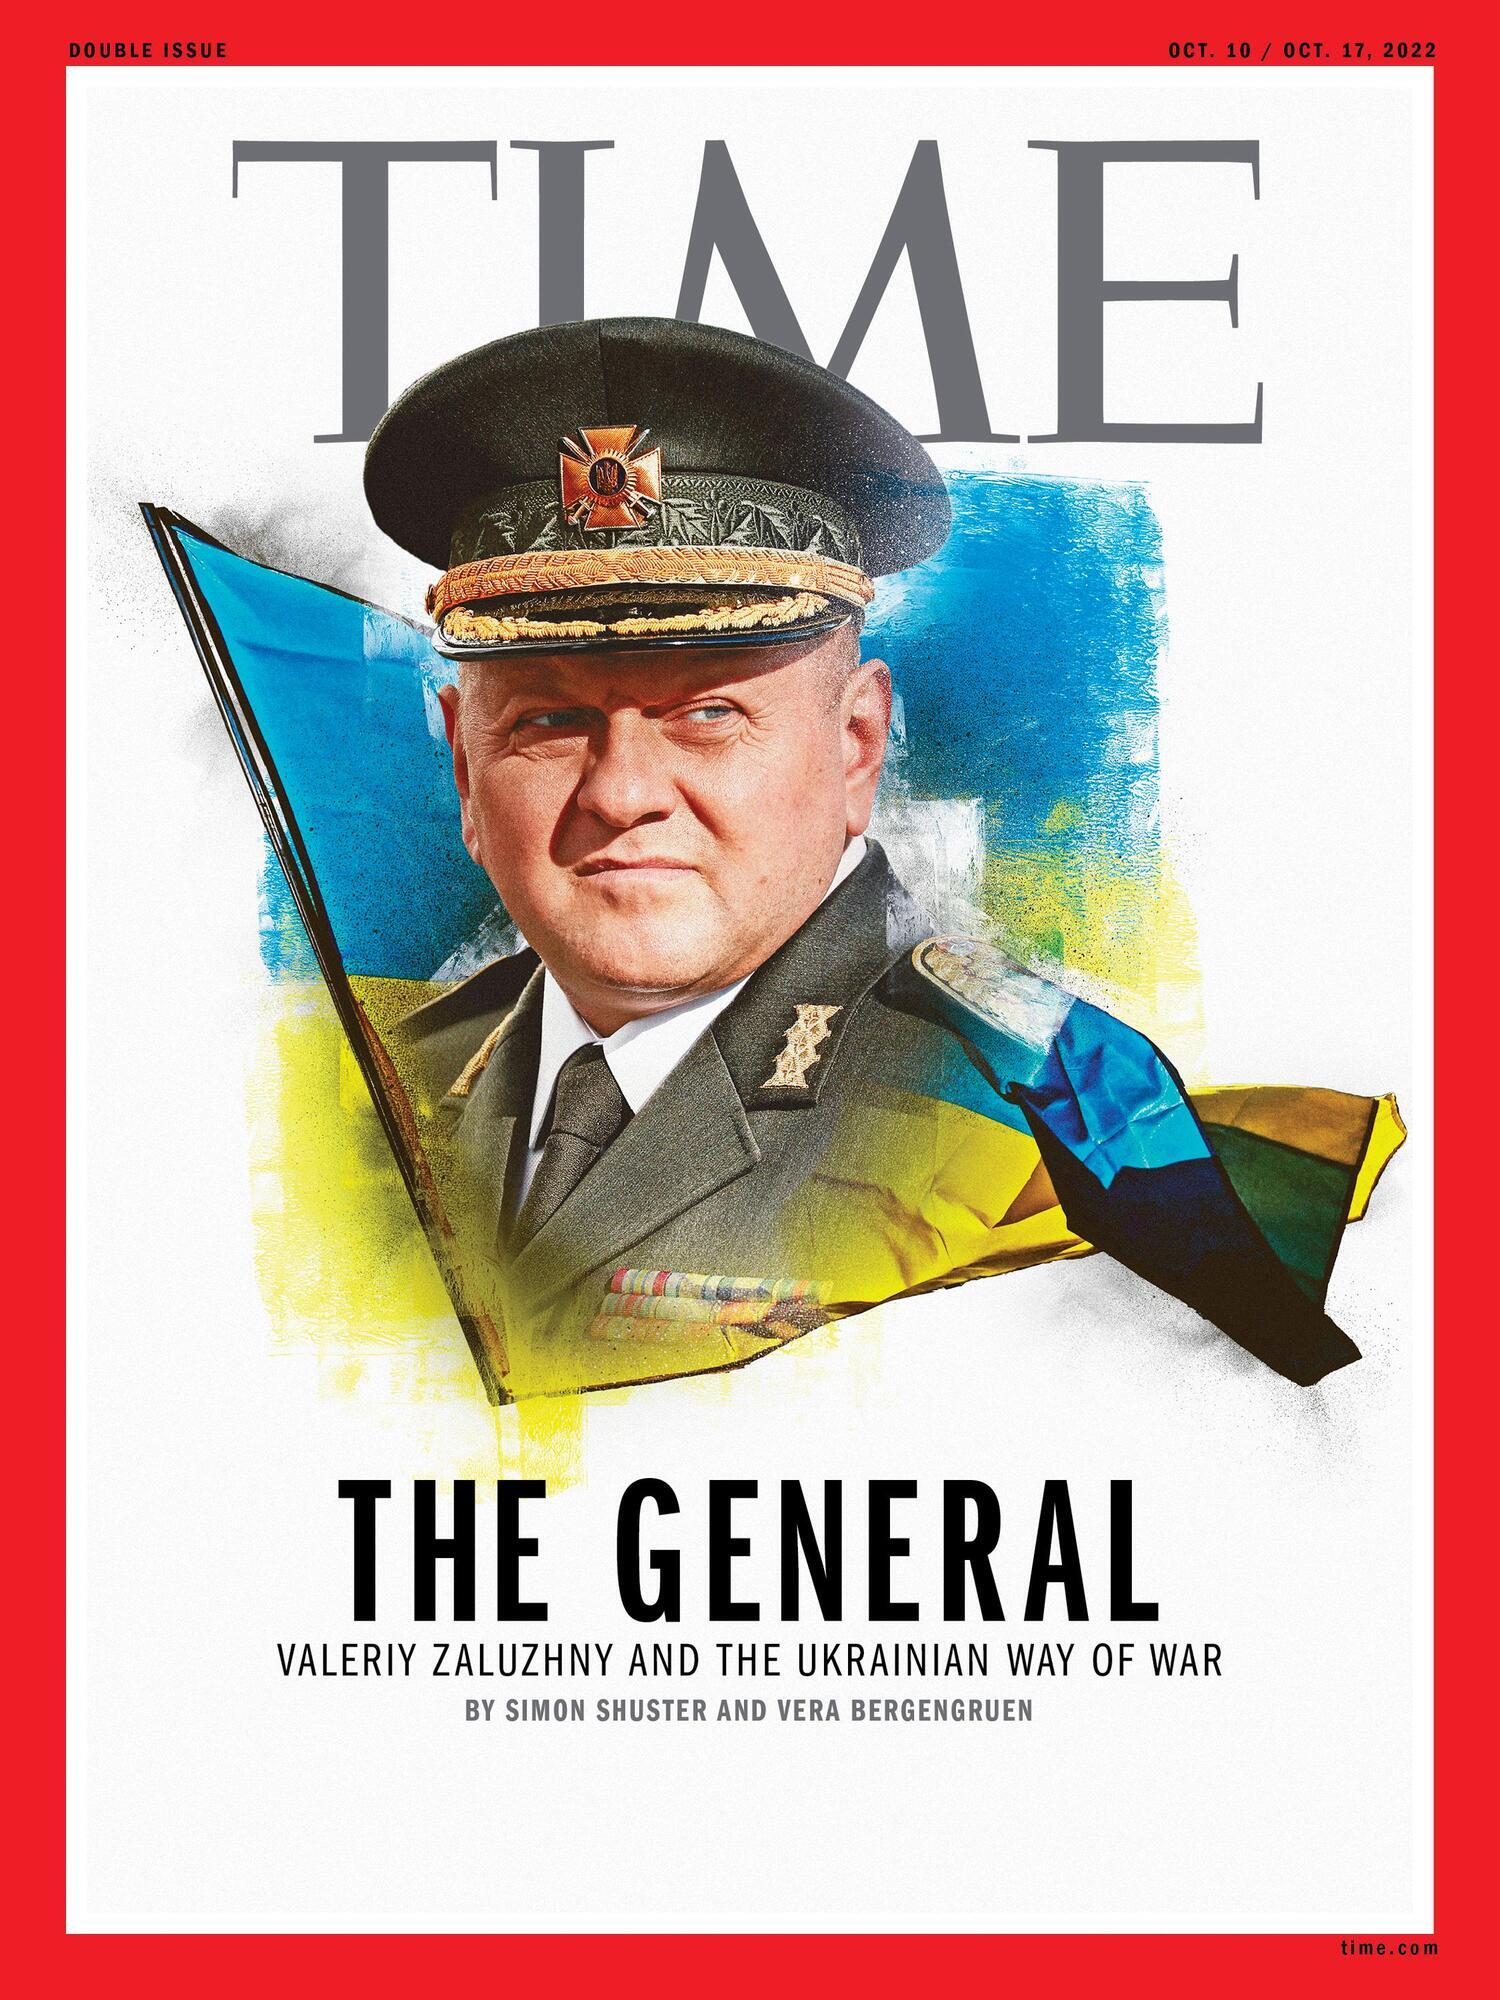 Залужный на обложке Time: украинцы еще не раз удивят мир!